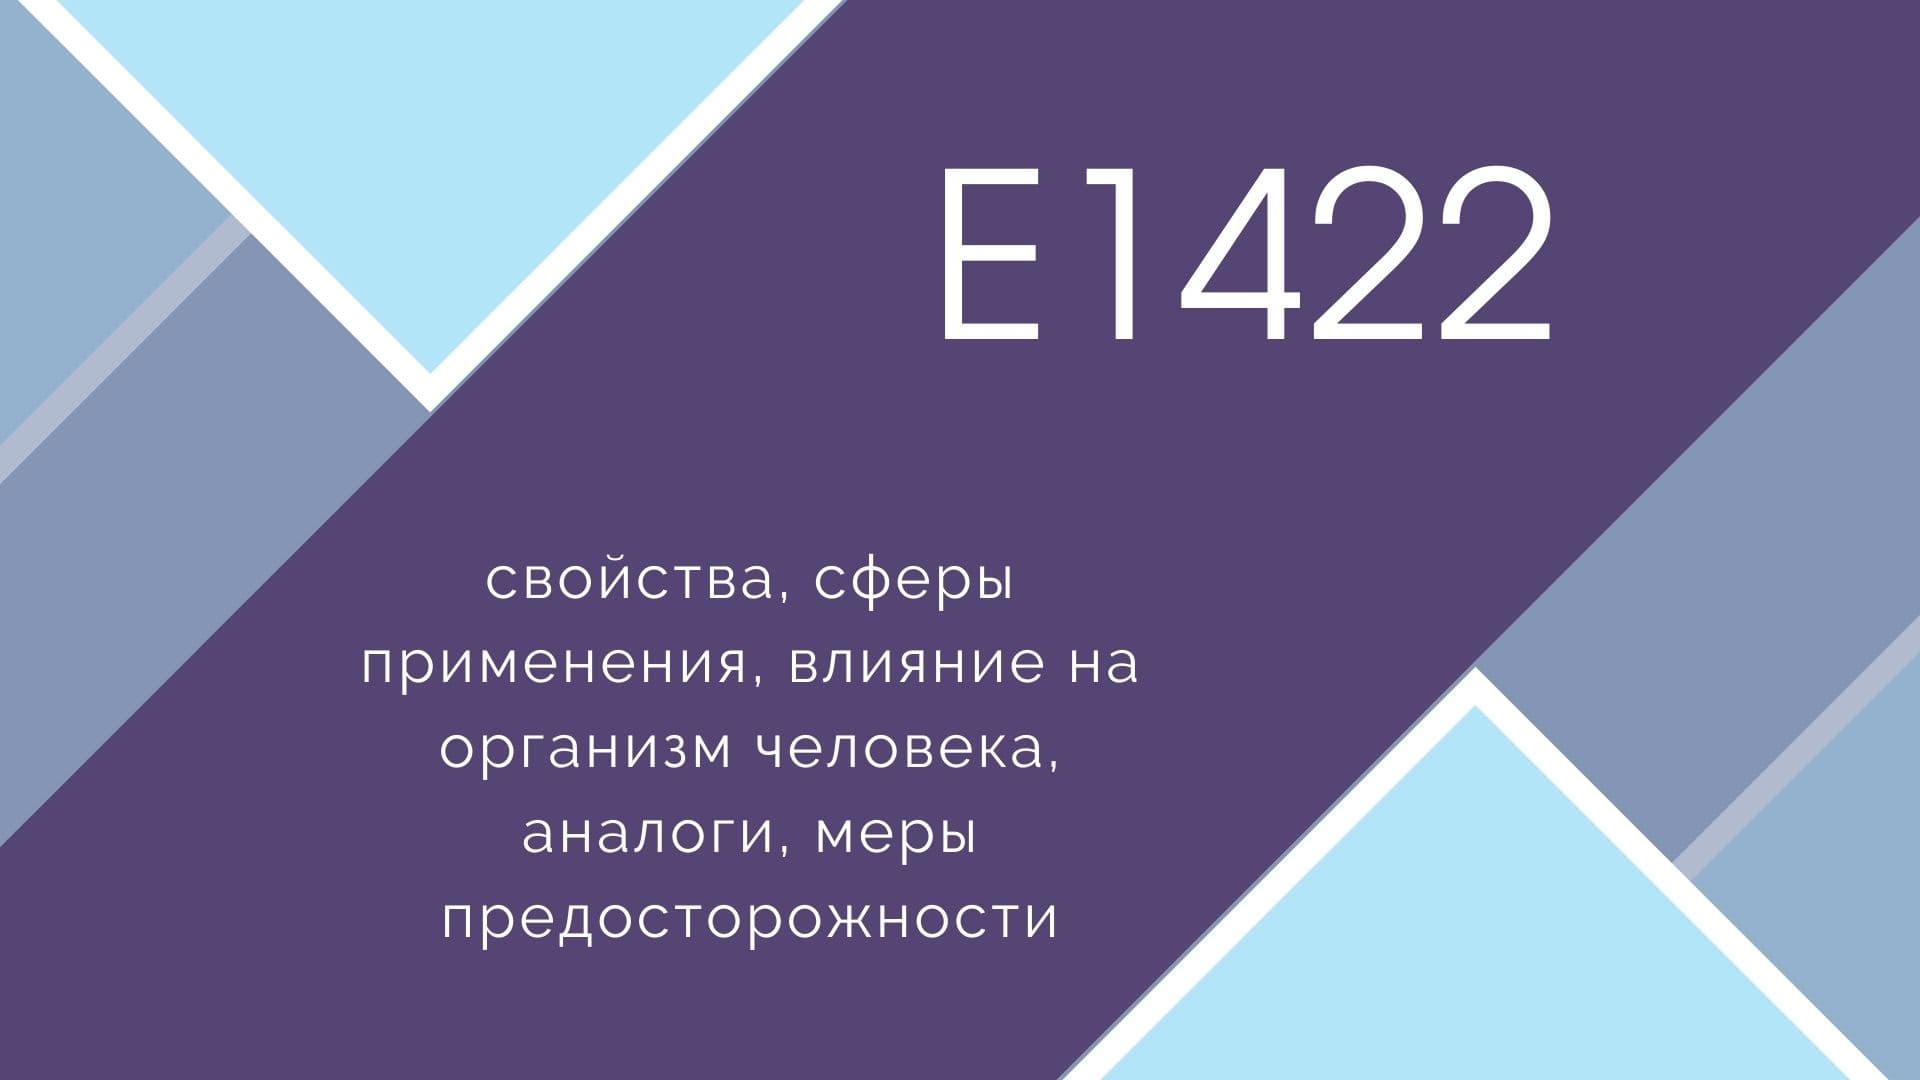 Добавка E579 Глюконат железа входит в категорию Стабилизаторы и имеет Растительное происхождение Низкая опасность добавки E579 подтверждена различными исследованиями Полную инфорацию о добавке E579 читайте на сайте Добавкамнет